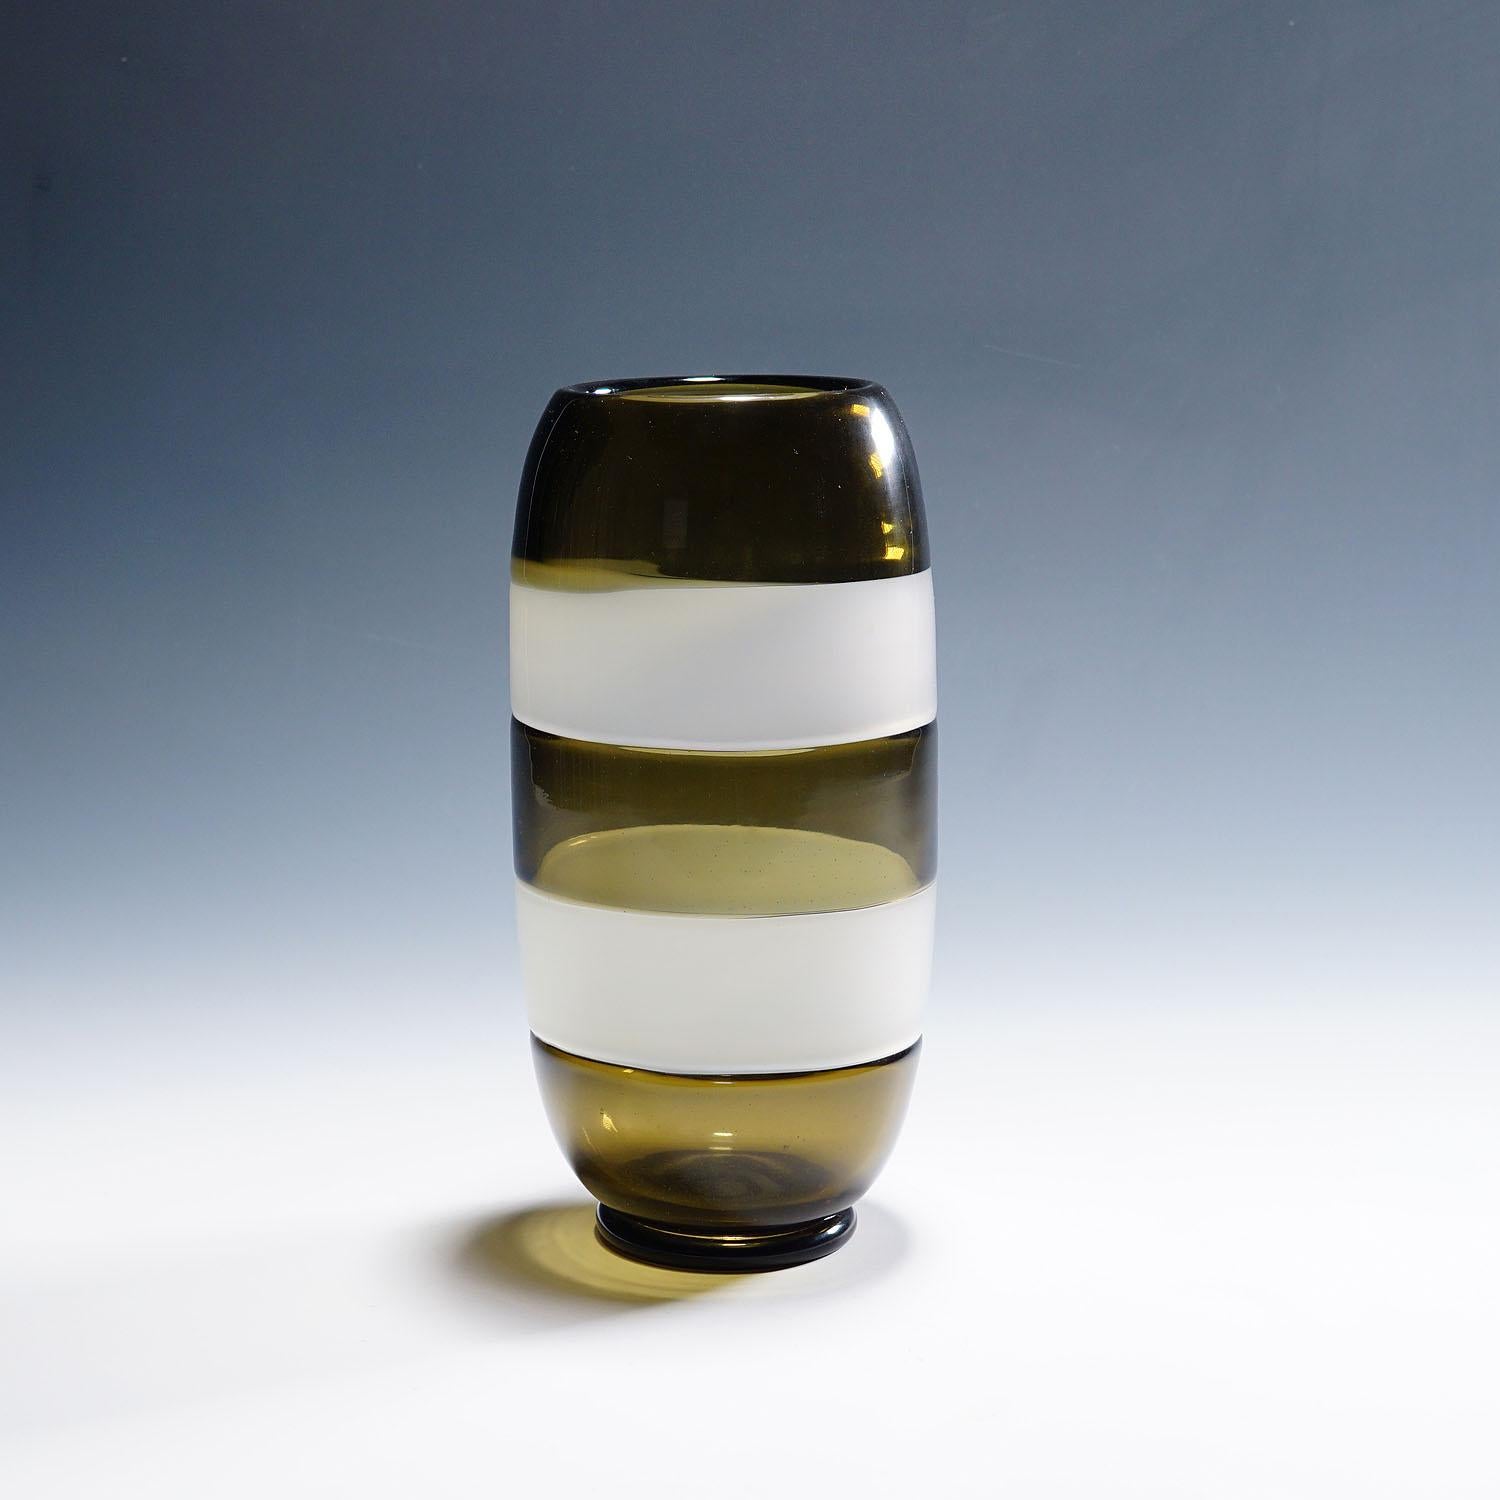 Vintage-Vase „Incalmo“ von Vetreria Archimede Seguso, 1972

Vintage-Vase aus venezianischem Kunstglas, hergestellt von Vetreria Archimede Seguso im Jahr 1972. Klares Glas mit rauchgrauem Unterfang. Zwei Bänder aus weißem Alabastro-Glas, horizontal